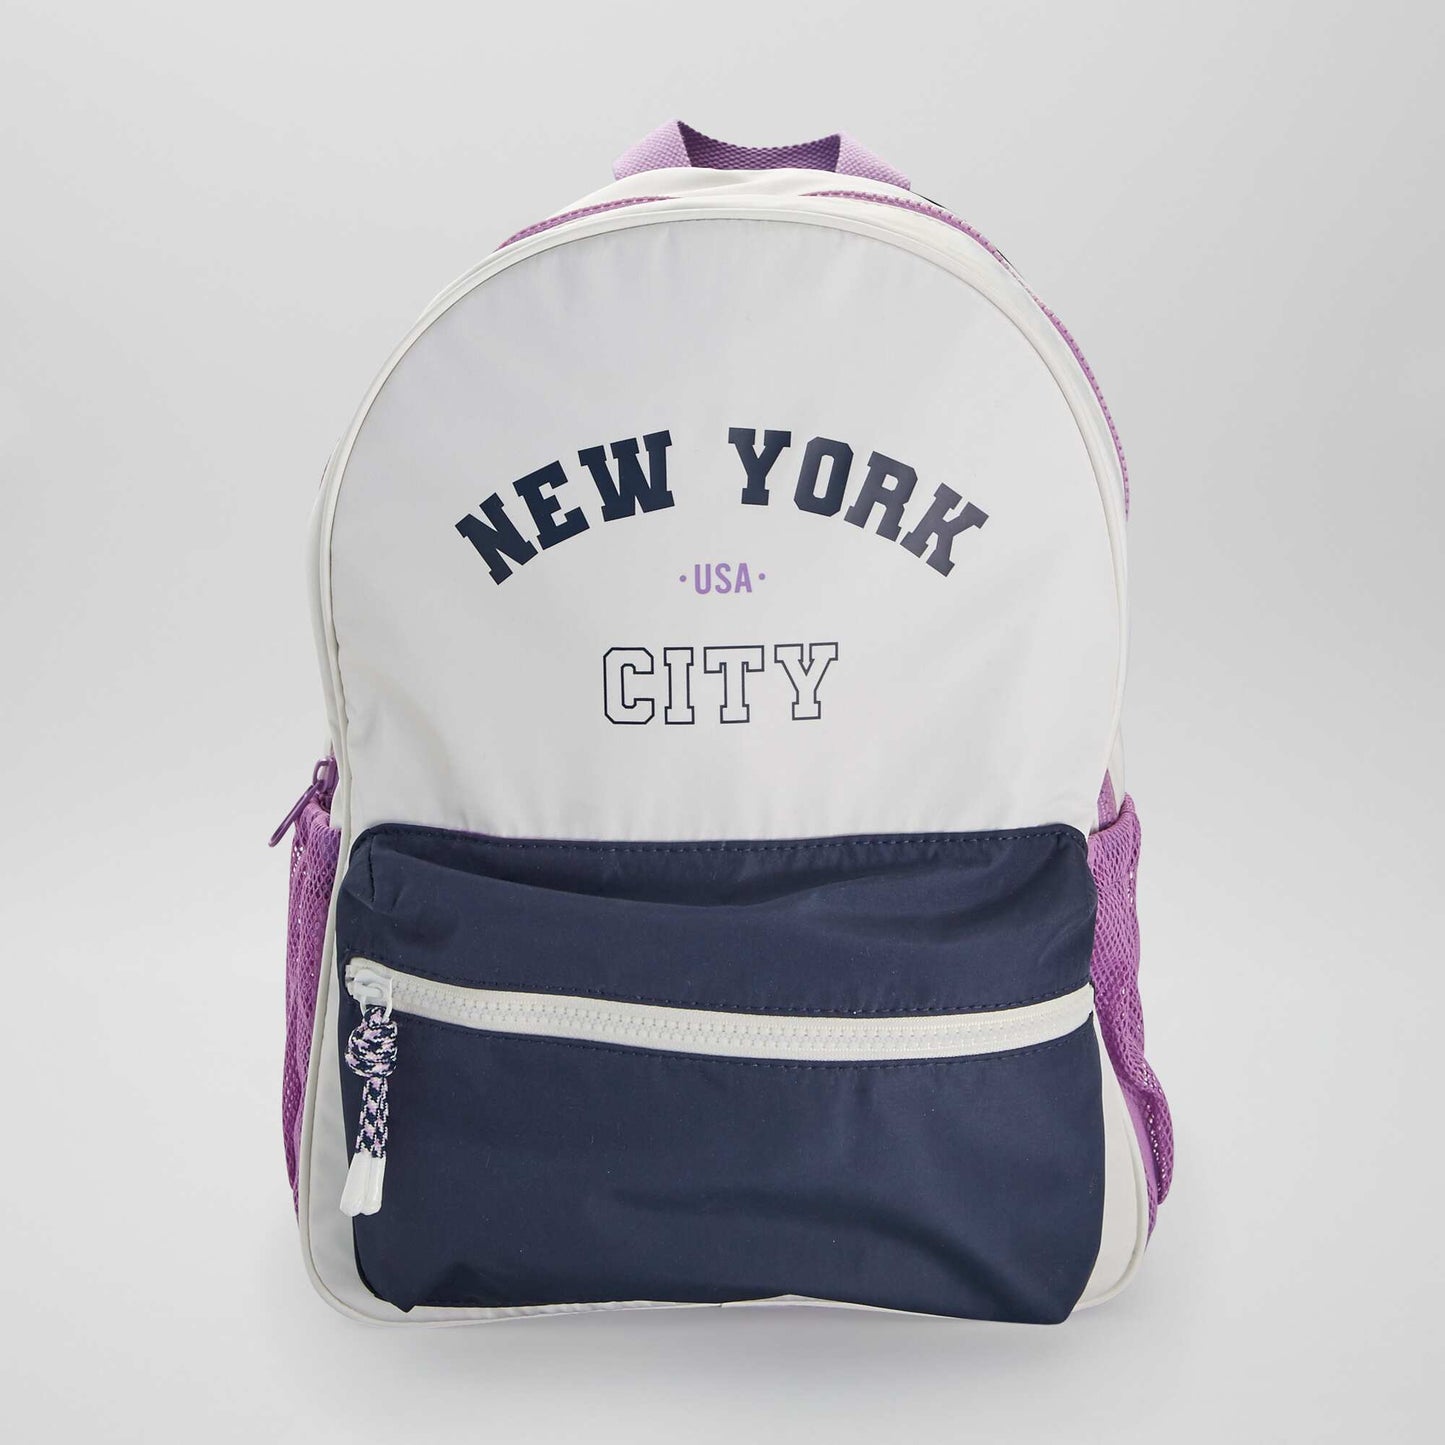 New York backpack multicoloured